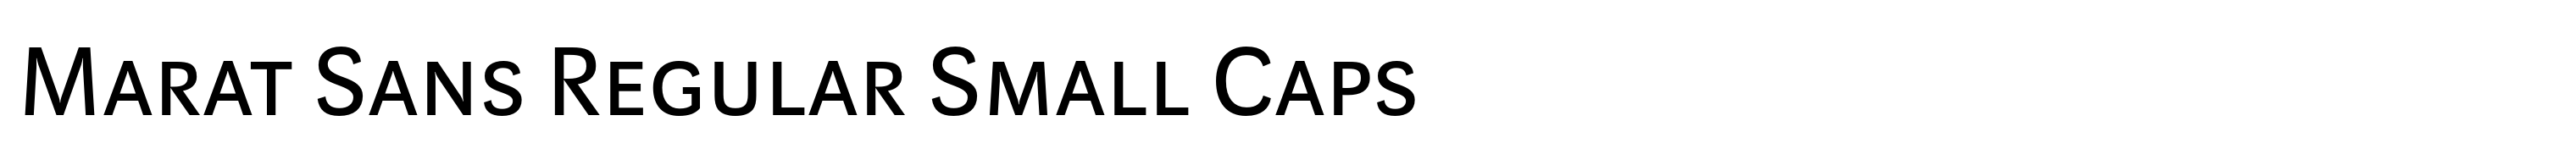 Marat Sans Regular Small Caps